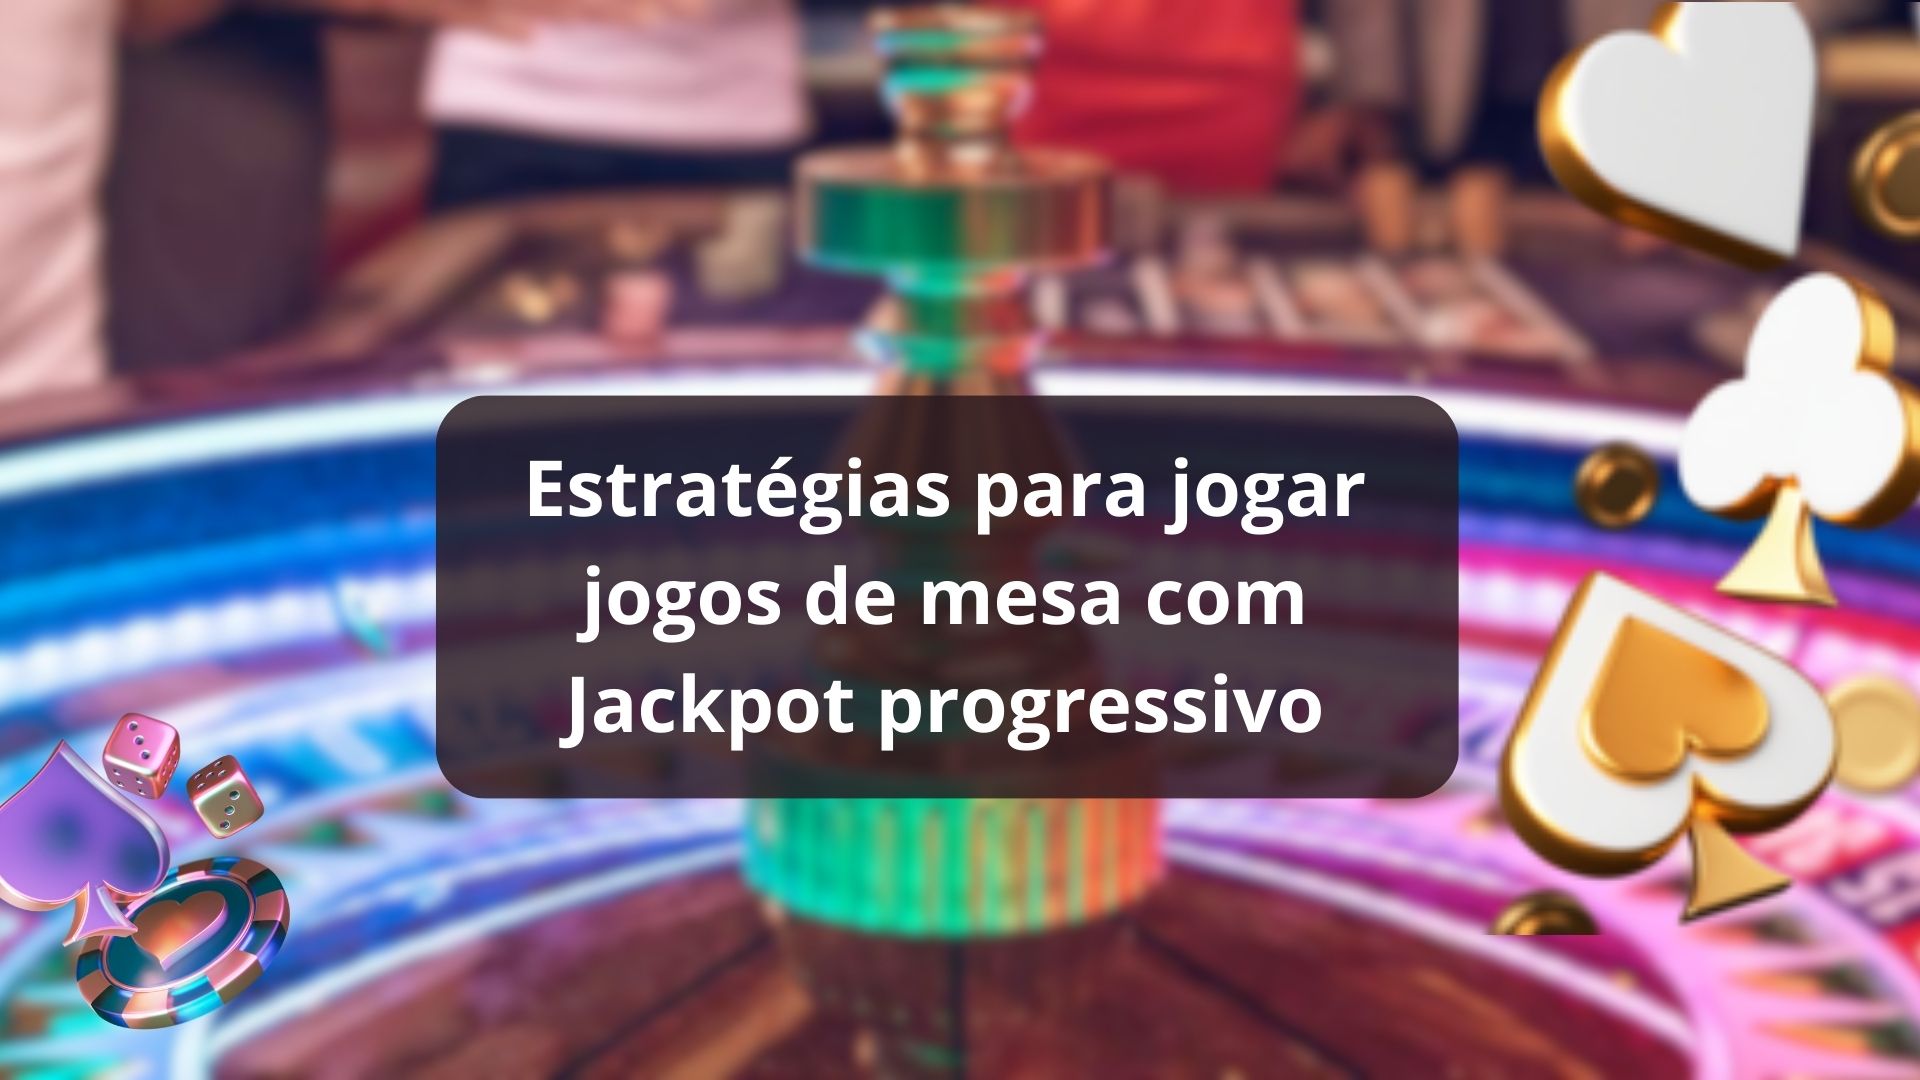 Estratégias para jogar jogos de mesa com Jackpot progressivo